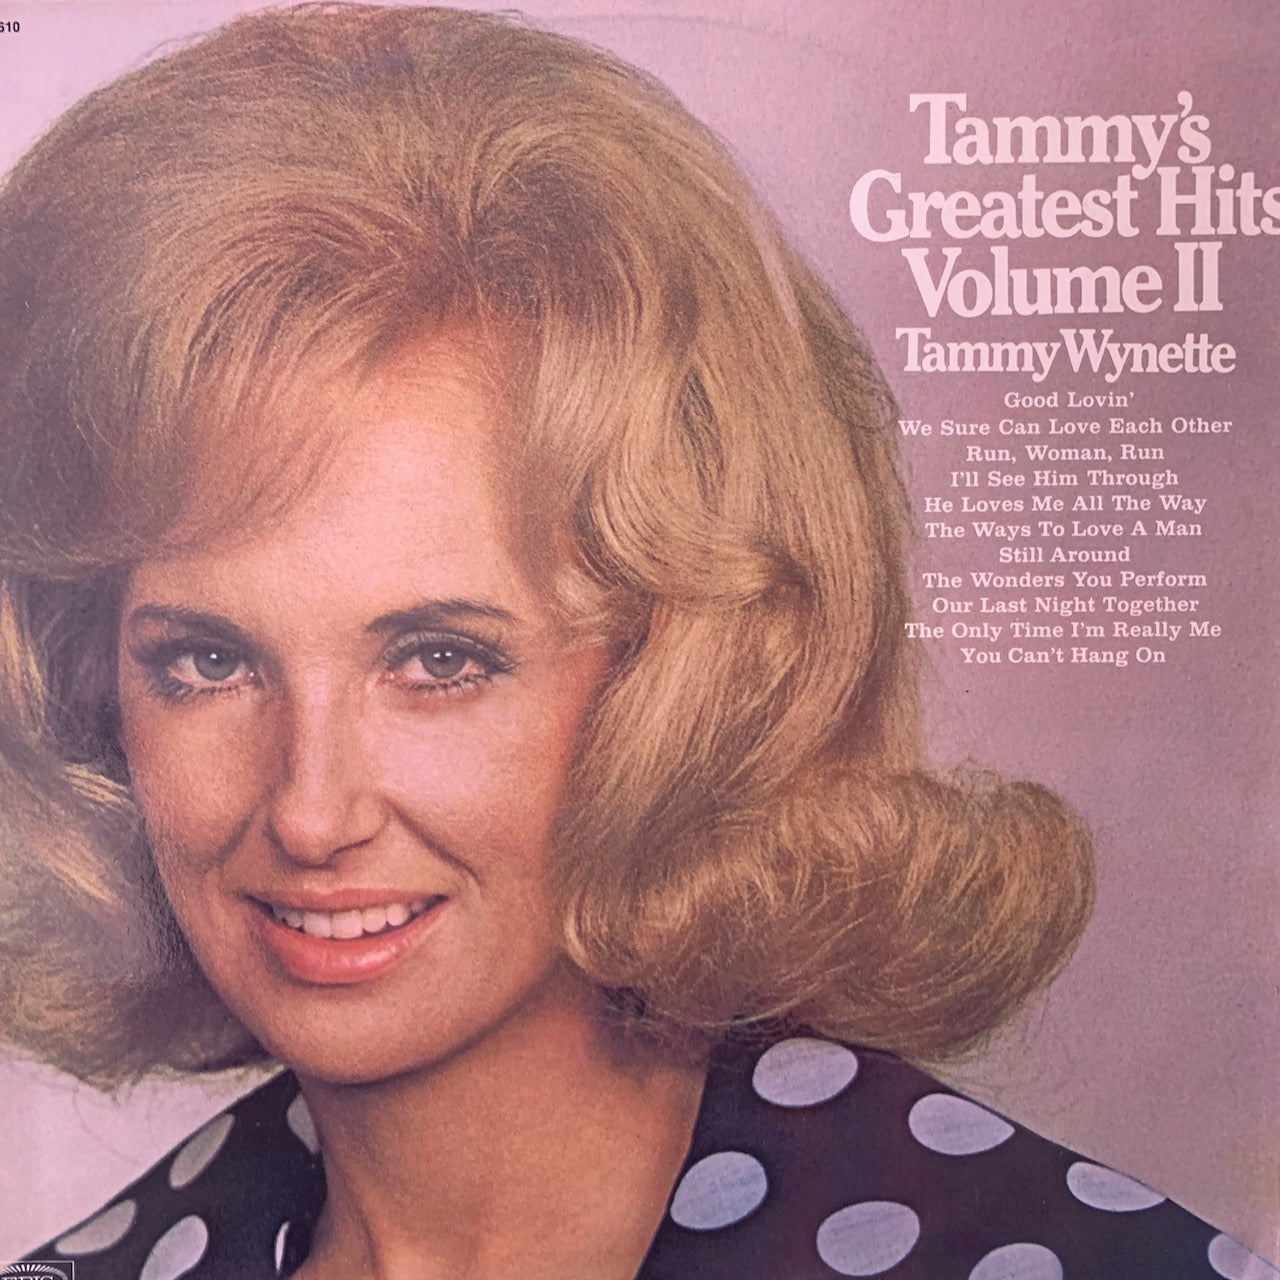 TAMMY WYNETTE - TAMMY'S GREATEST HITS, VOLUME II    VG+/VG+ 1971